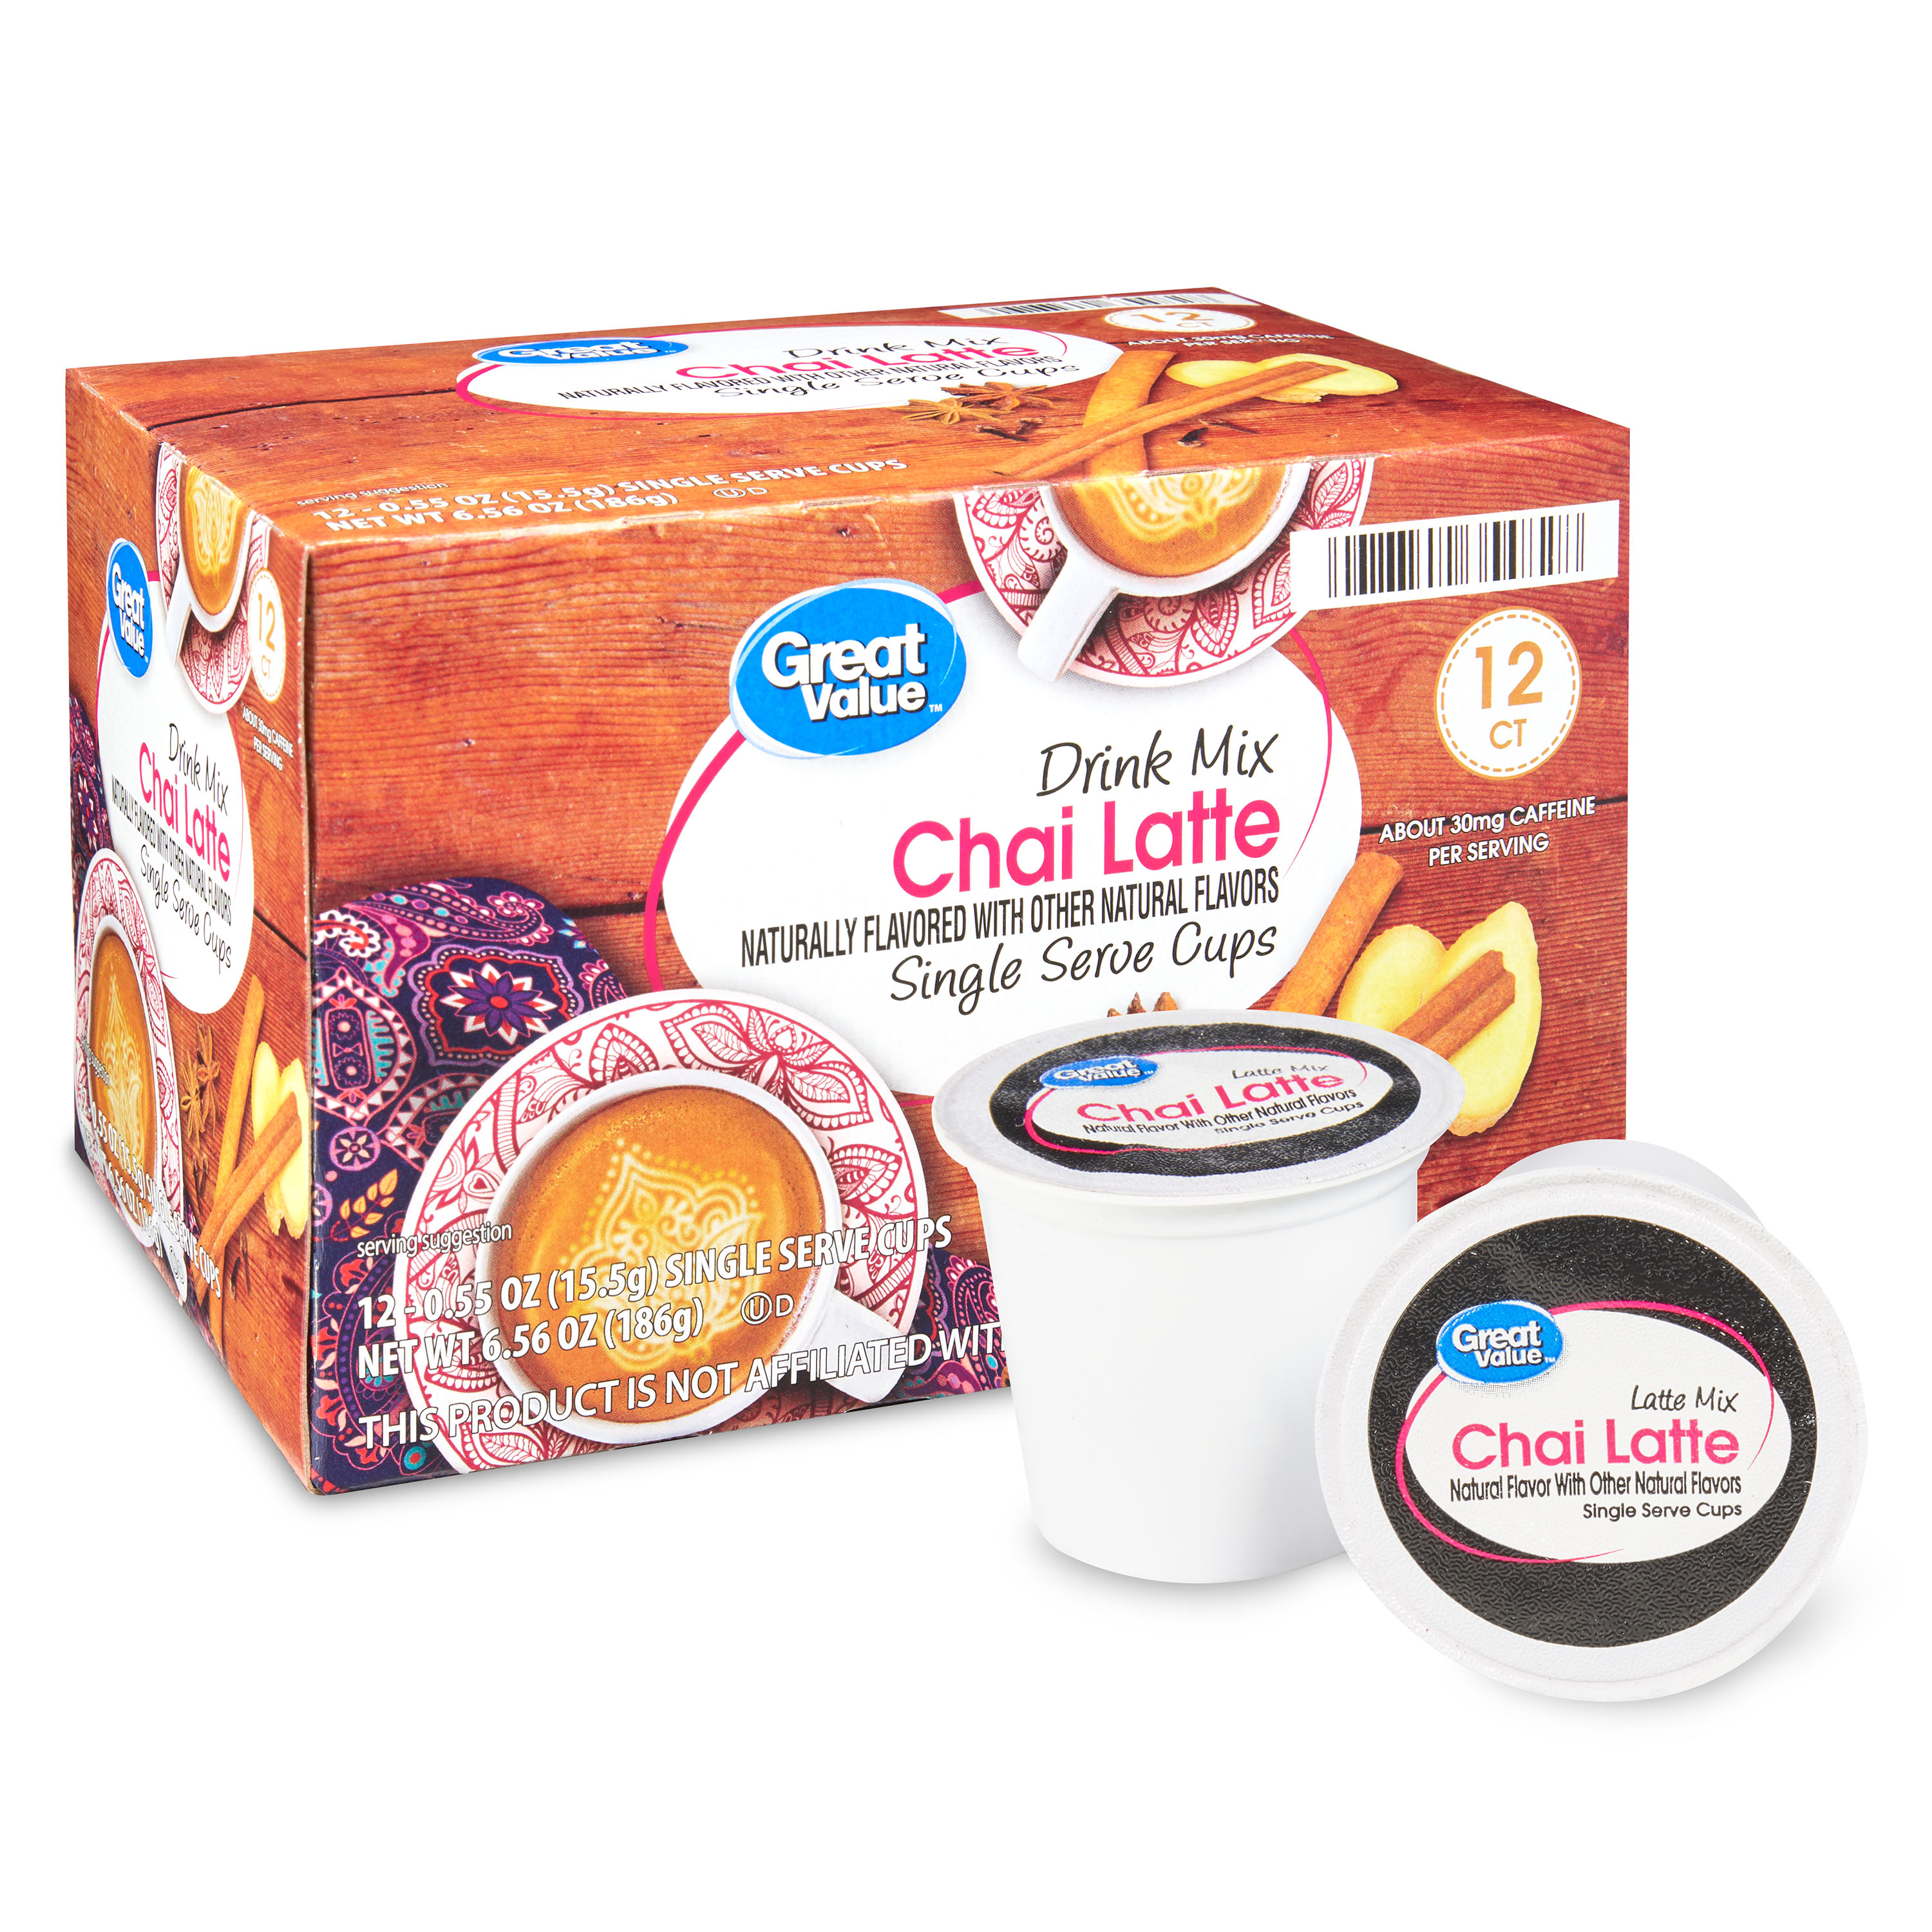 Great Value Chai Latte Mix Tea Pods, 12 Count